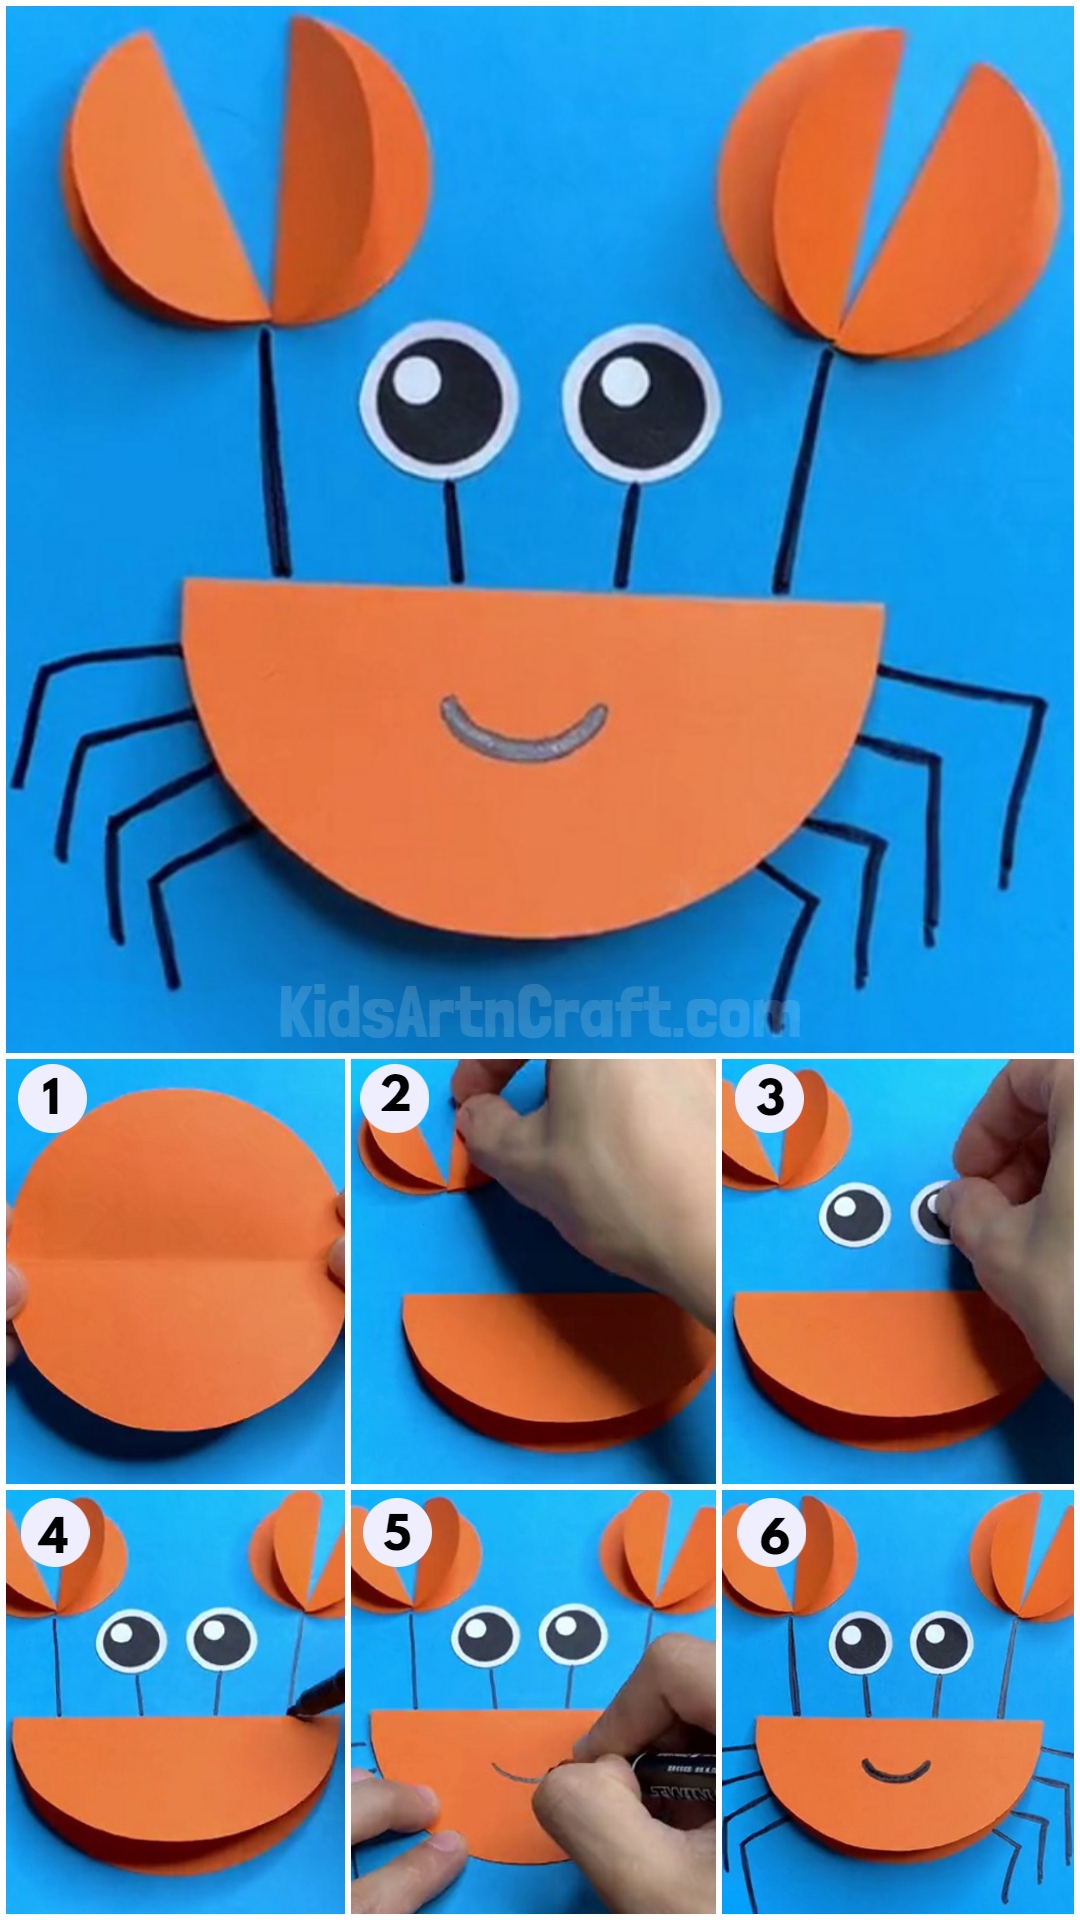 DIY Paper Circle Crab Tutorial For Kids